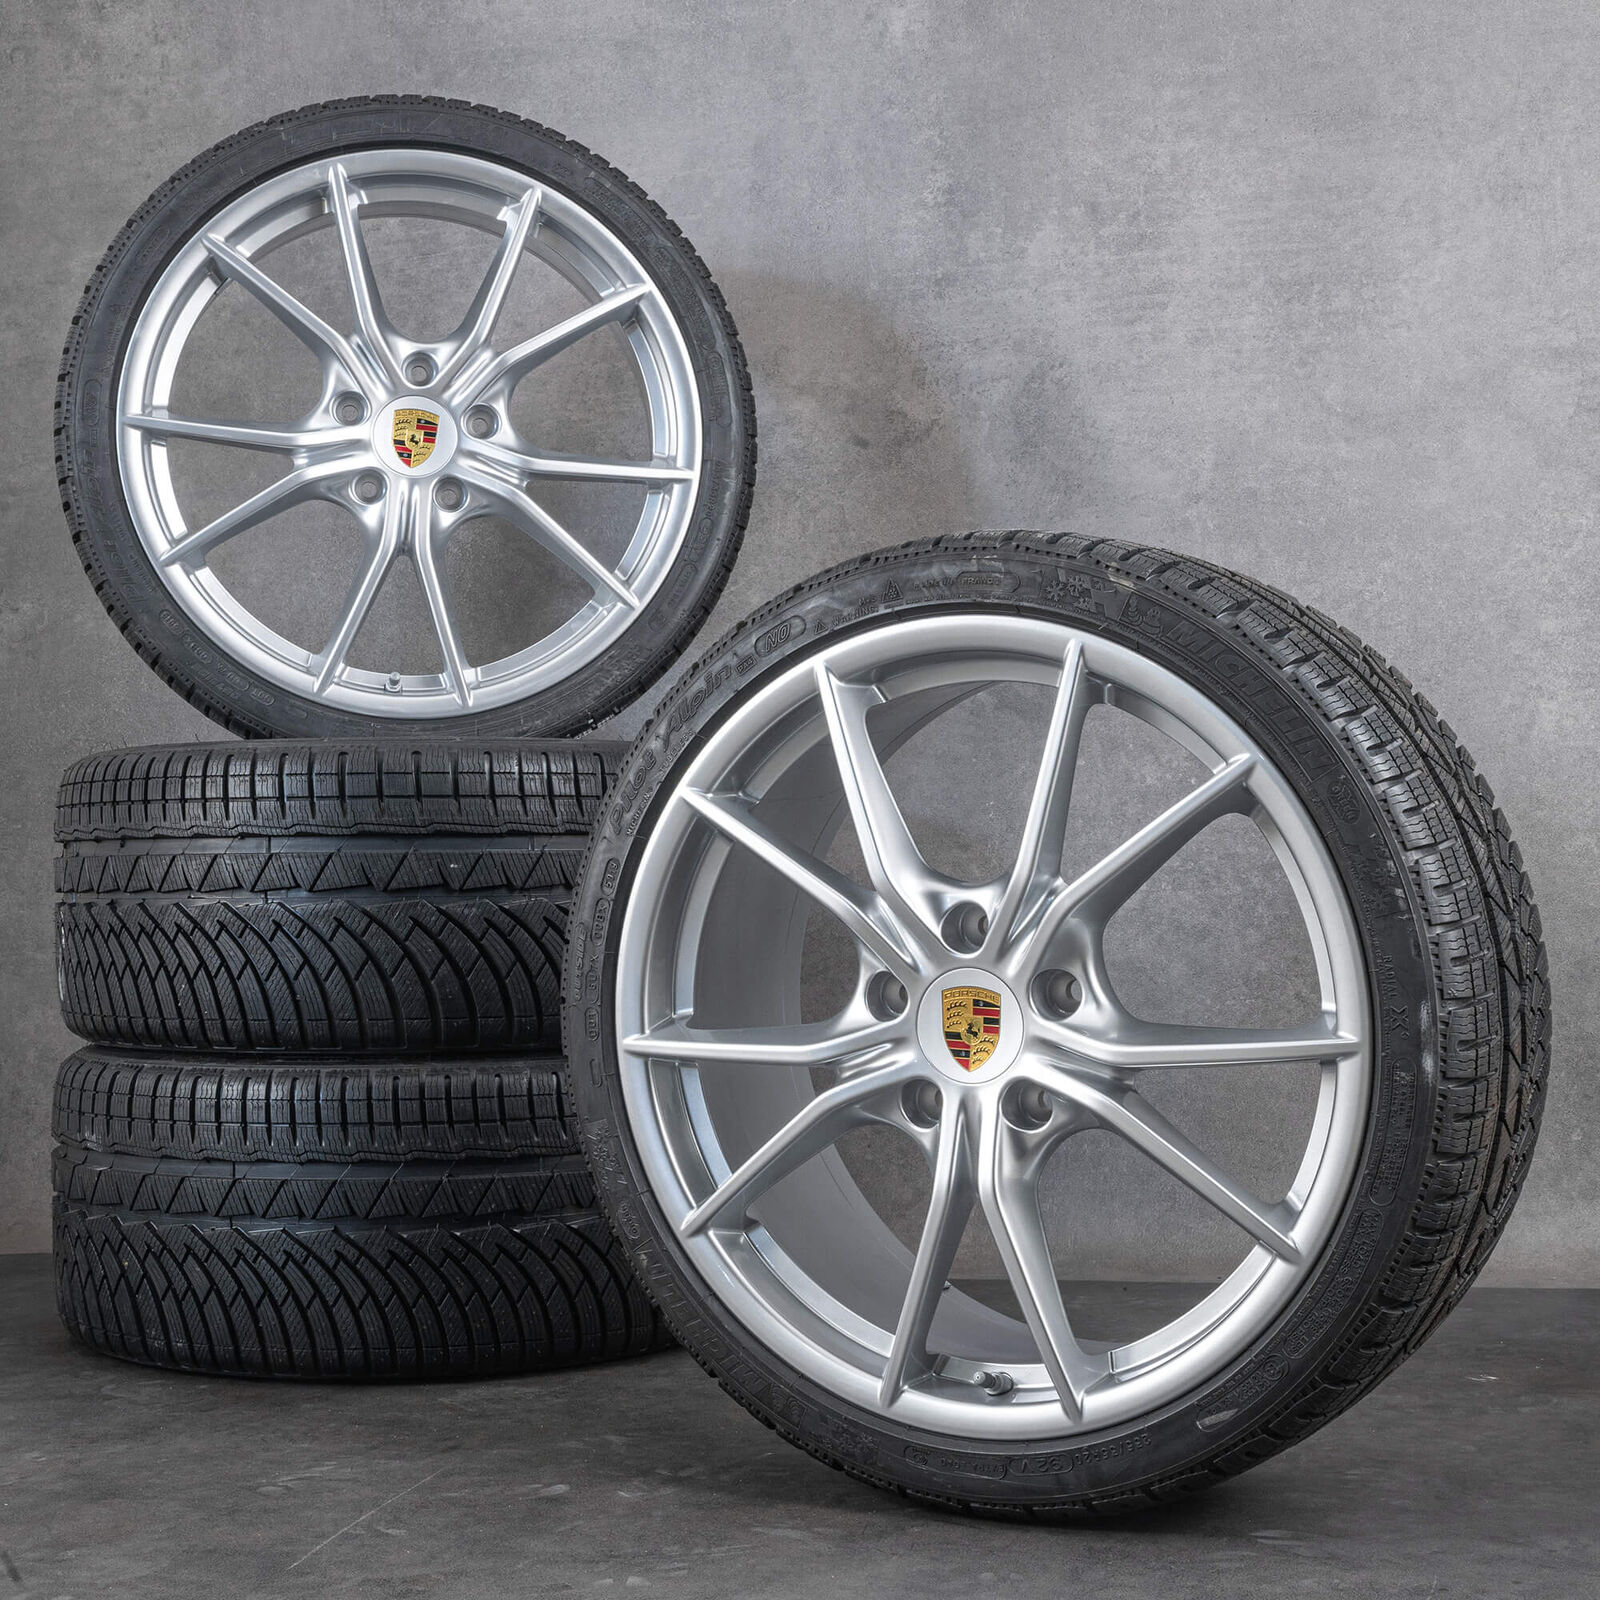 Original Porsche Cayman GT4 718 rims 20 inch winter wheels winter tires NEW